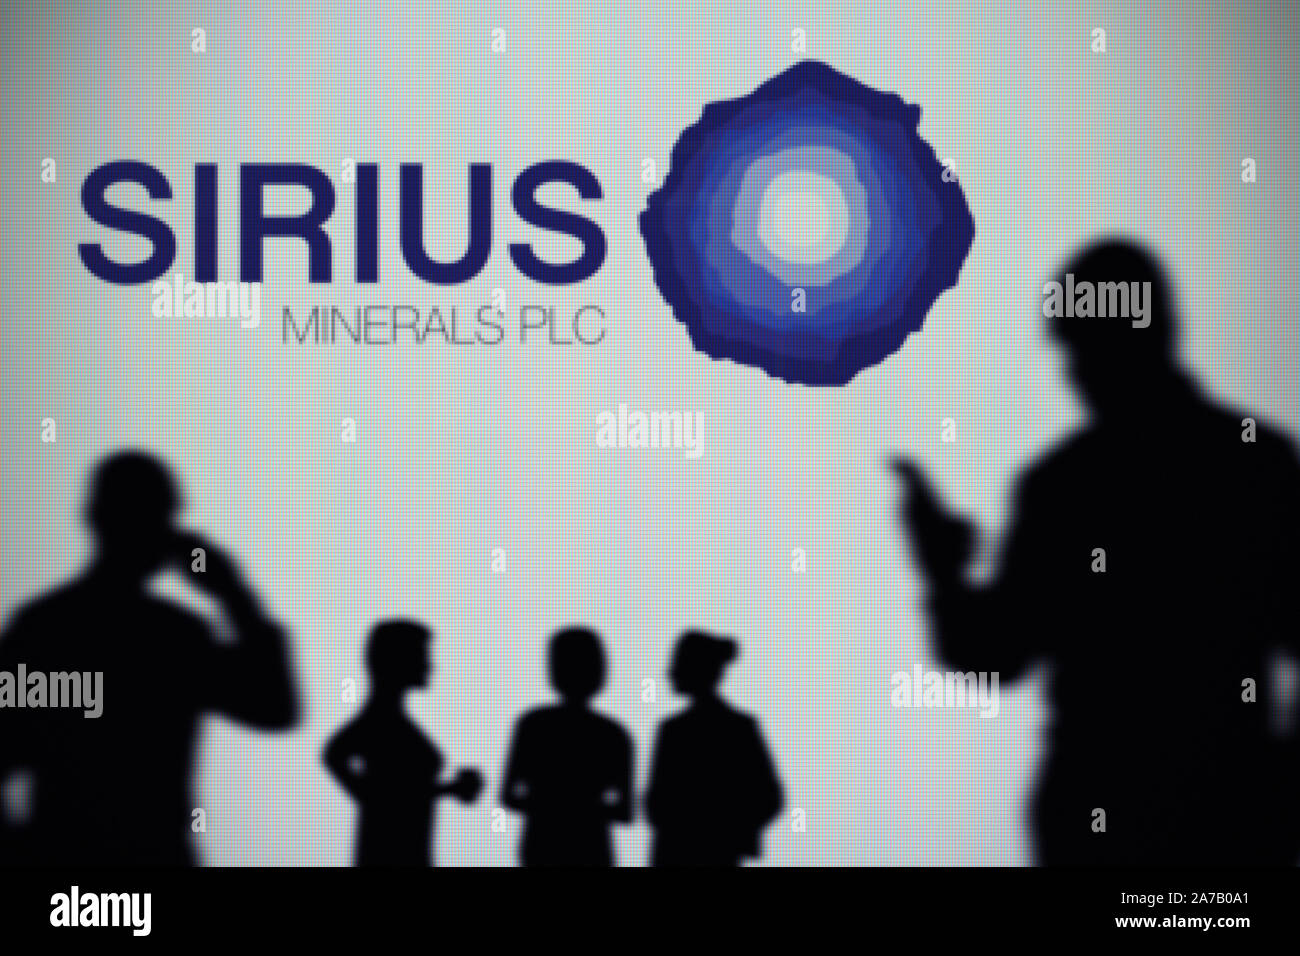 Sirius minerali logo è visibile su uno schermo a LED in background mentre si profila una persona utilizza uno smartphone (solo uso editoriale) Foto Stock